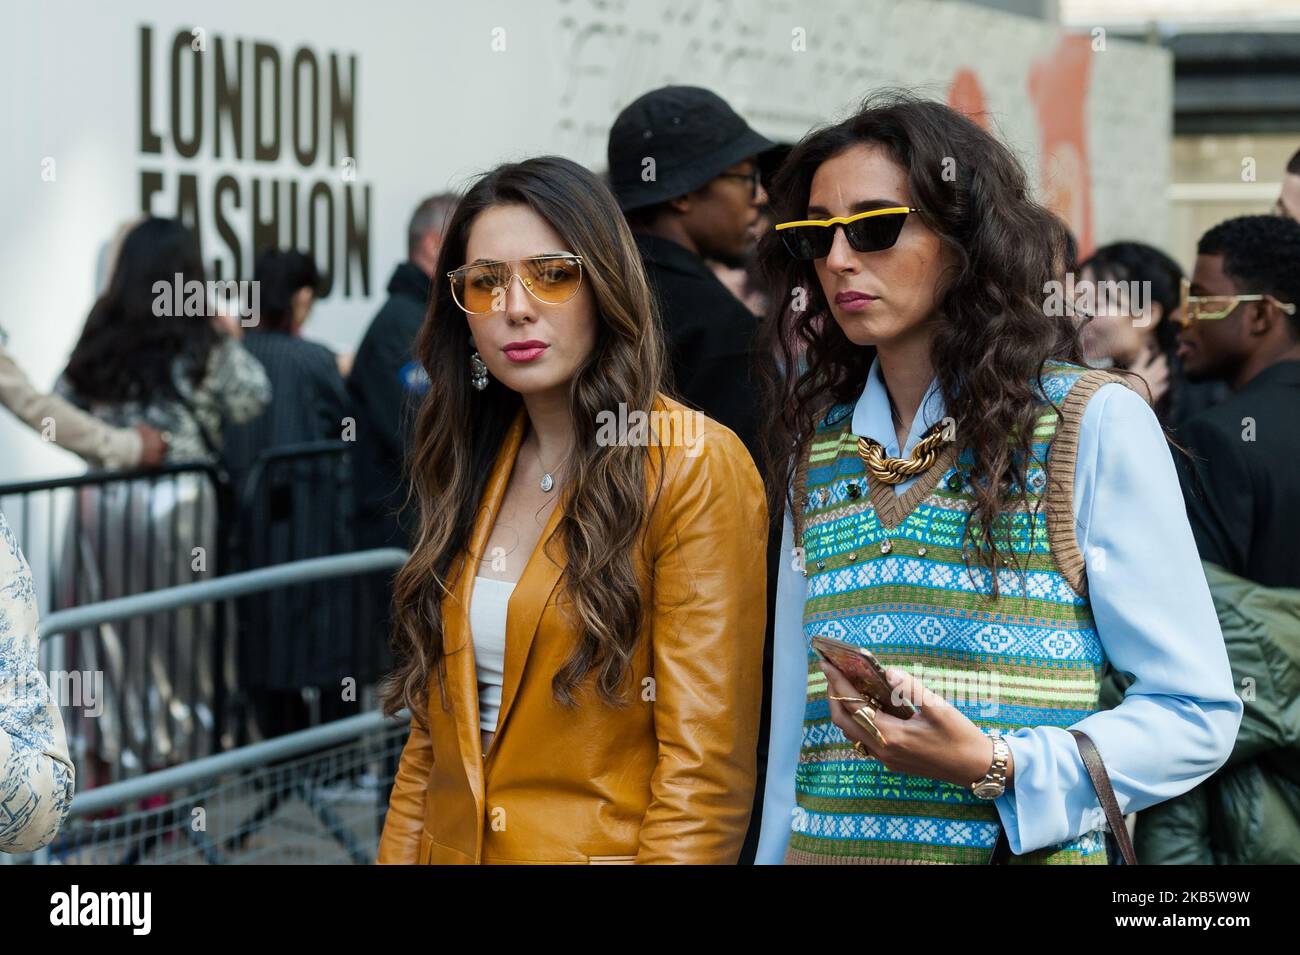 Besucher besuchen die London Fashion Week am 13. September 2019 in London, England. Während der fünftägigen Veranstaltung werden Designer ihre Frühjahr/Sommer 2020-Kollektionen an verschiedenen Orten in der britischen Hauptstadt präsentieren. (Foto von Wiktor Szymanowicz/NurPhoto) Stockfoto